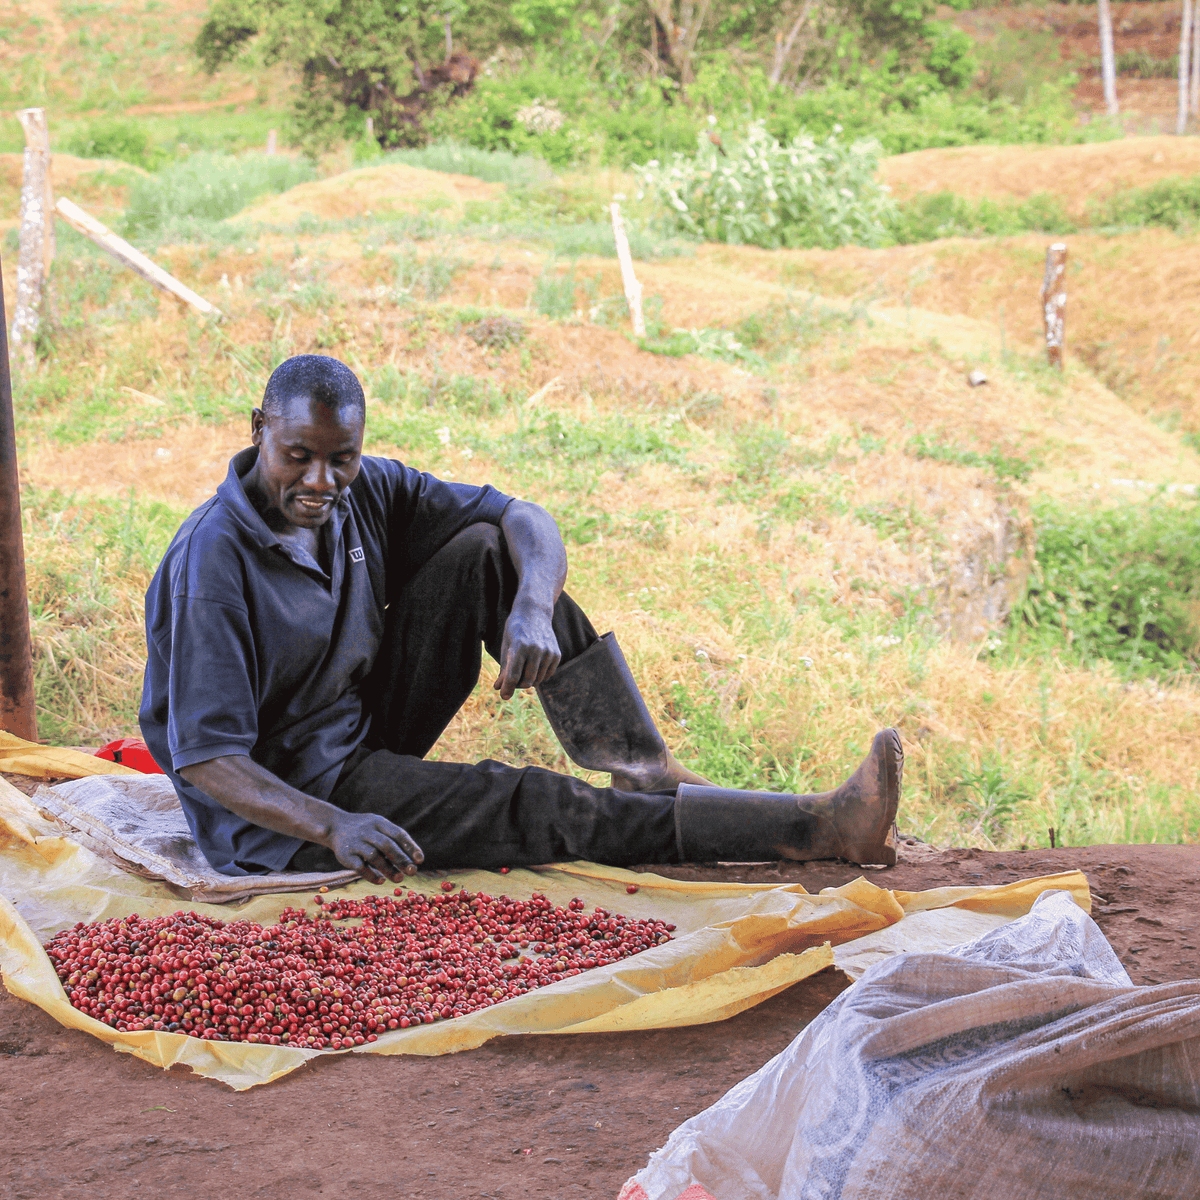 Coffee farmer at Kanamui farm sorting through ripe coffee cherries.